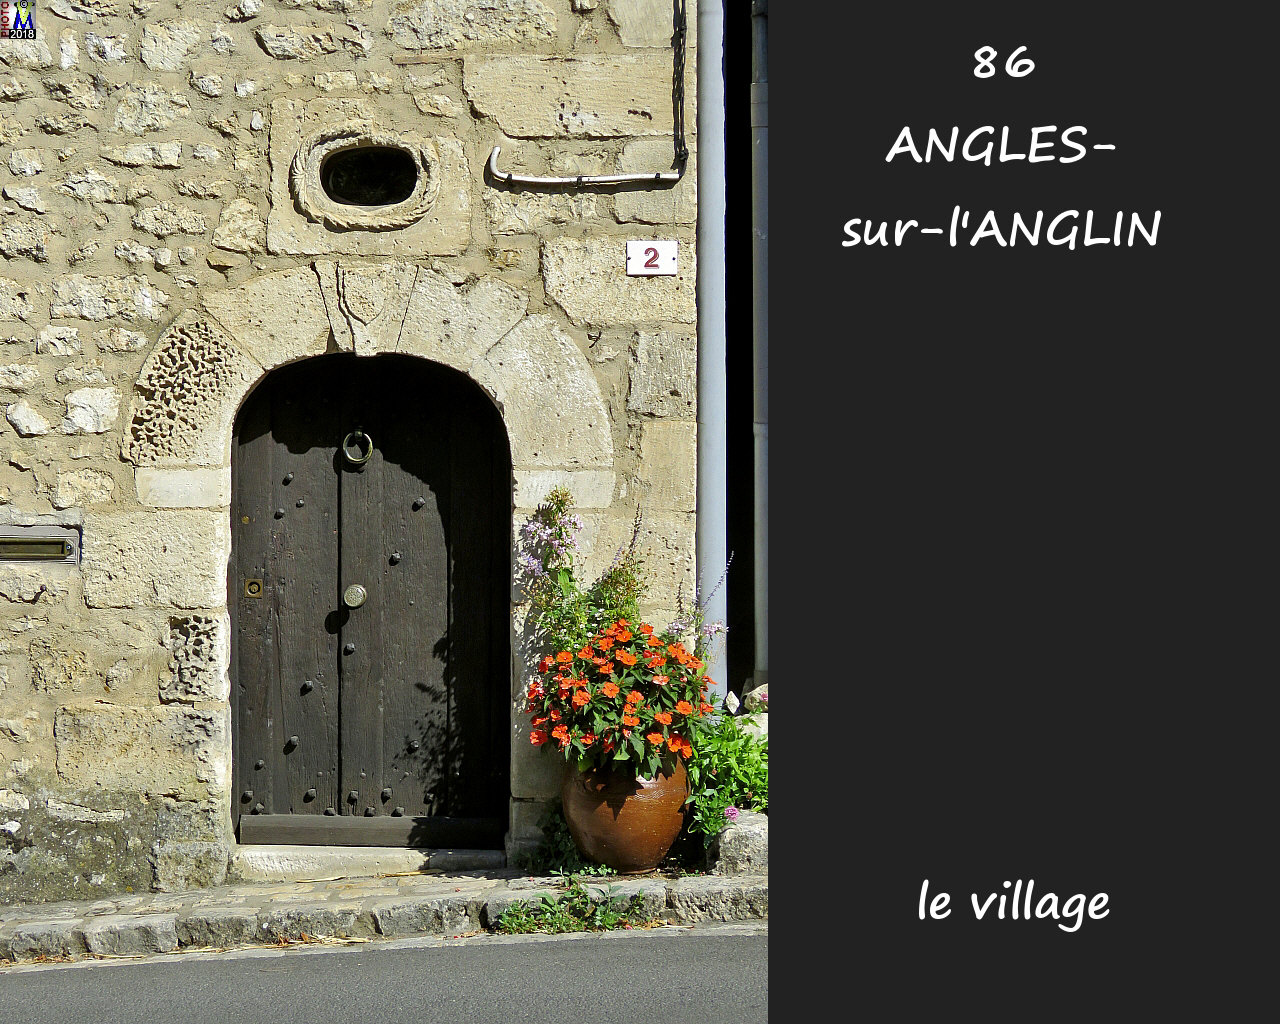 86ANGLES-S-ANGLIN_village_1104.jpg